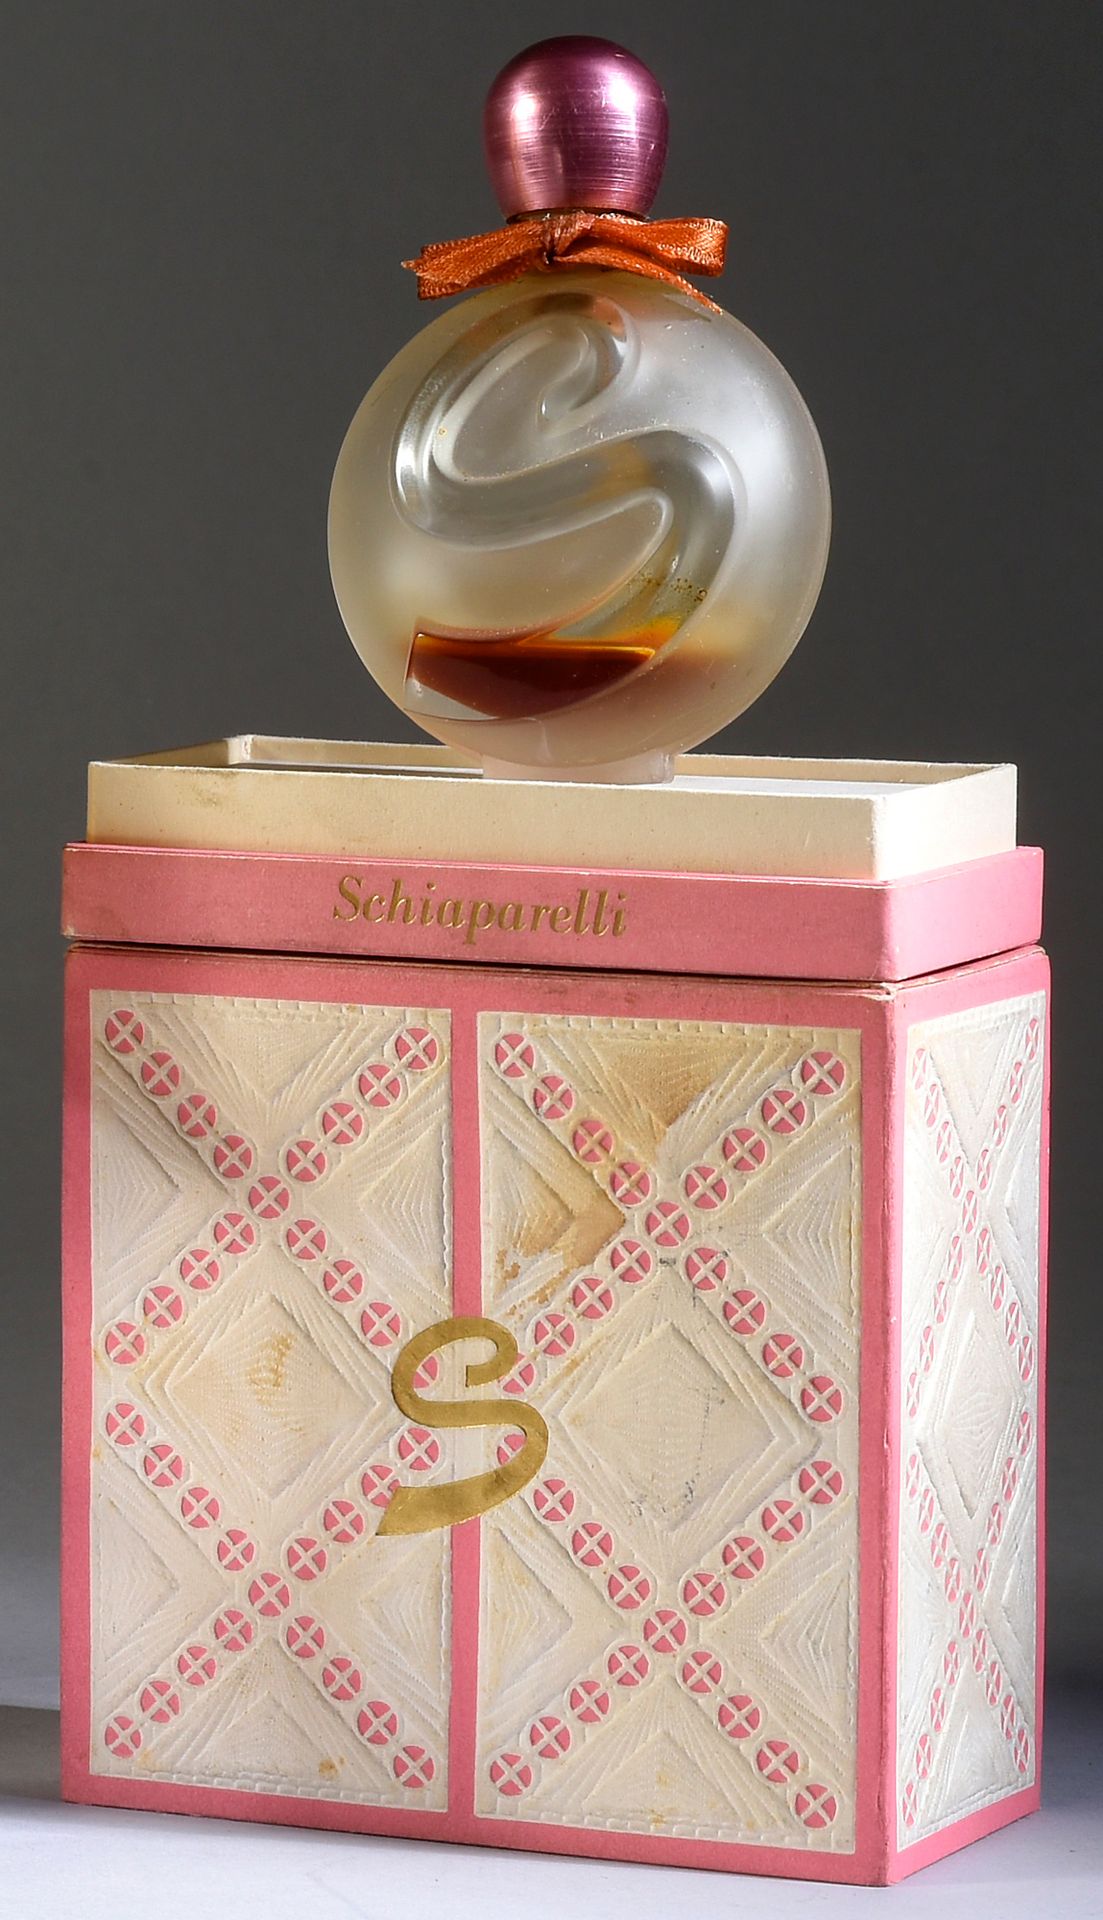 Schiaparelli - «S» - (1961) 
Presentado en su caja de cartón recubierta de papel&hellip;